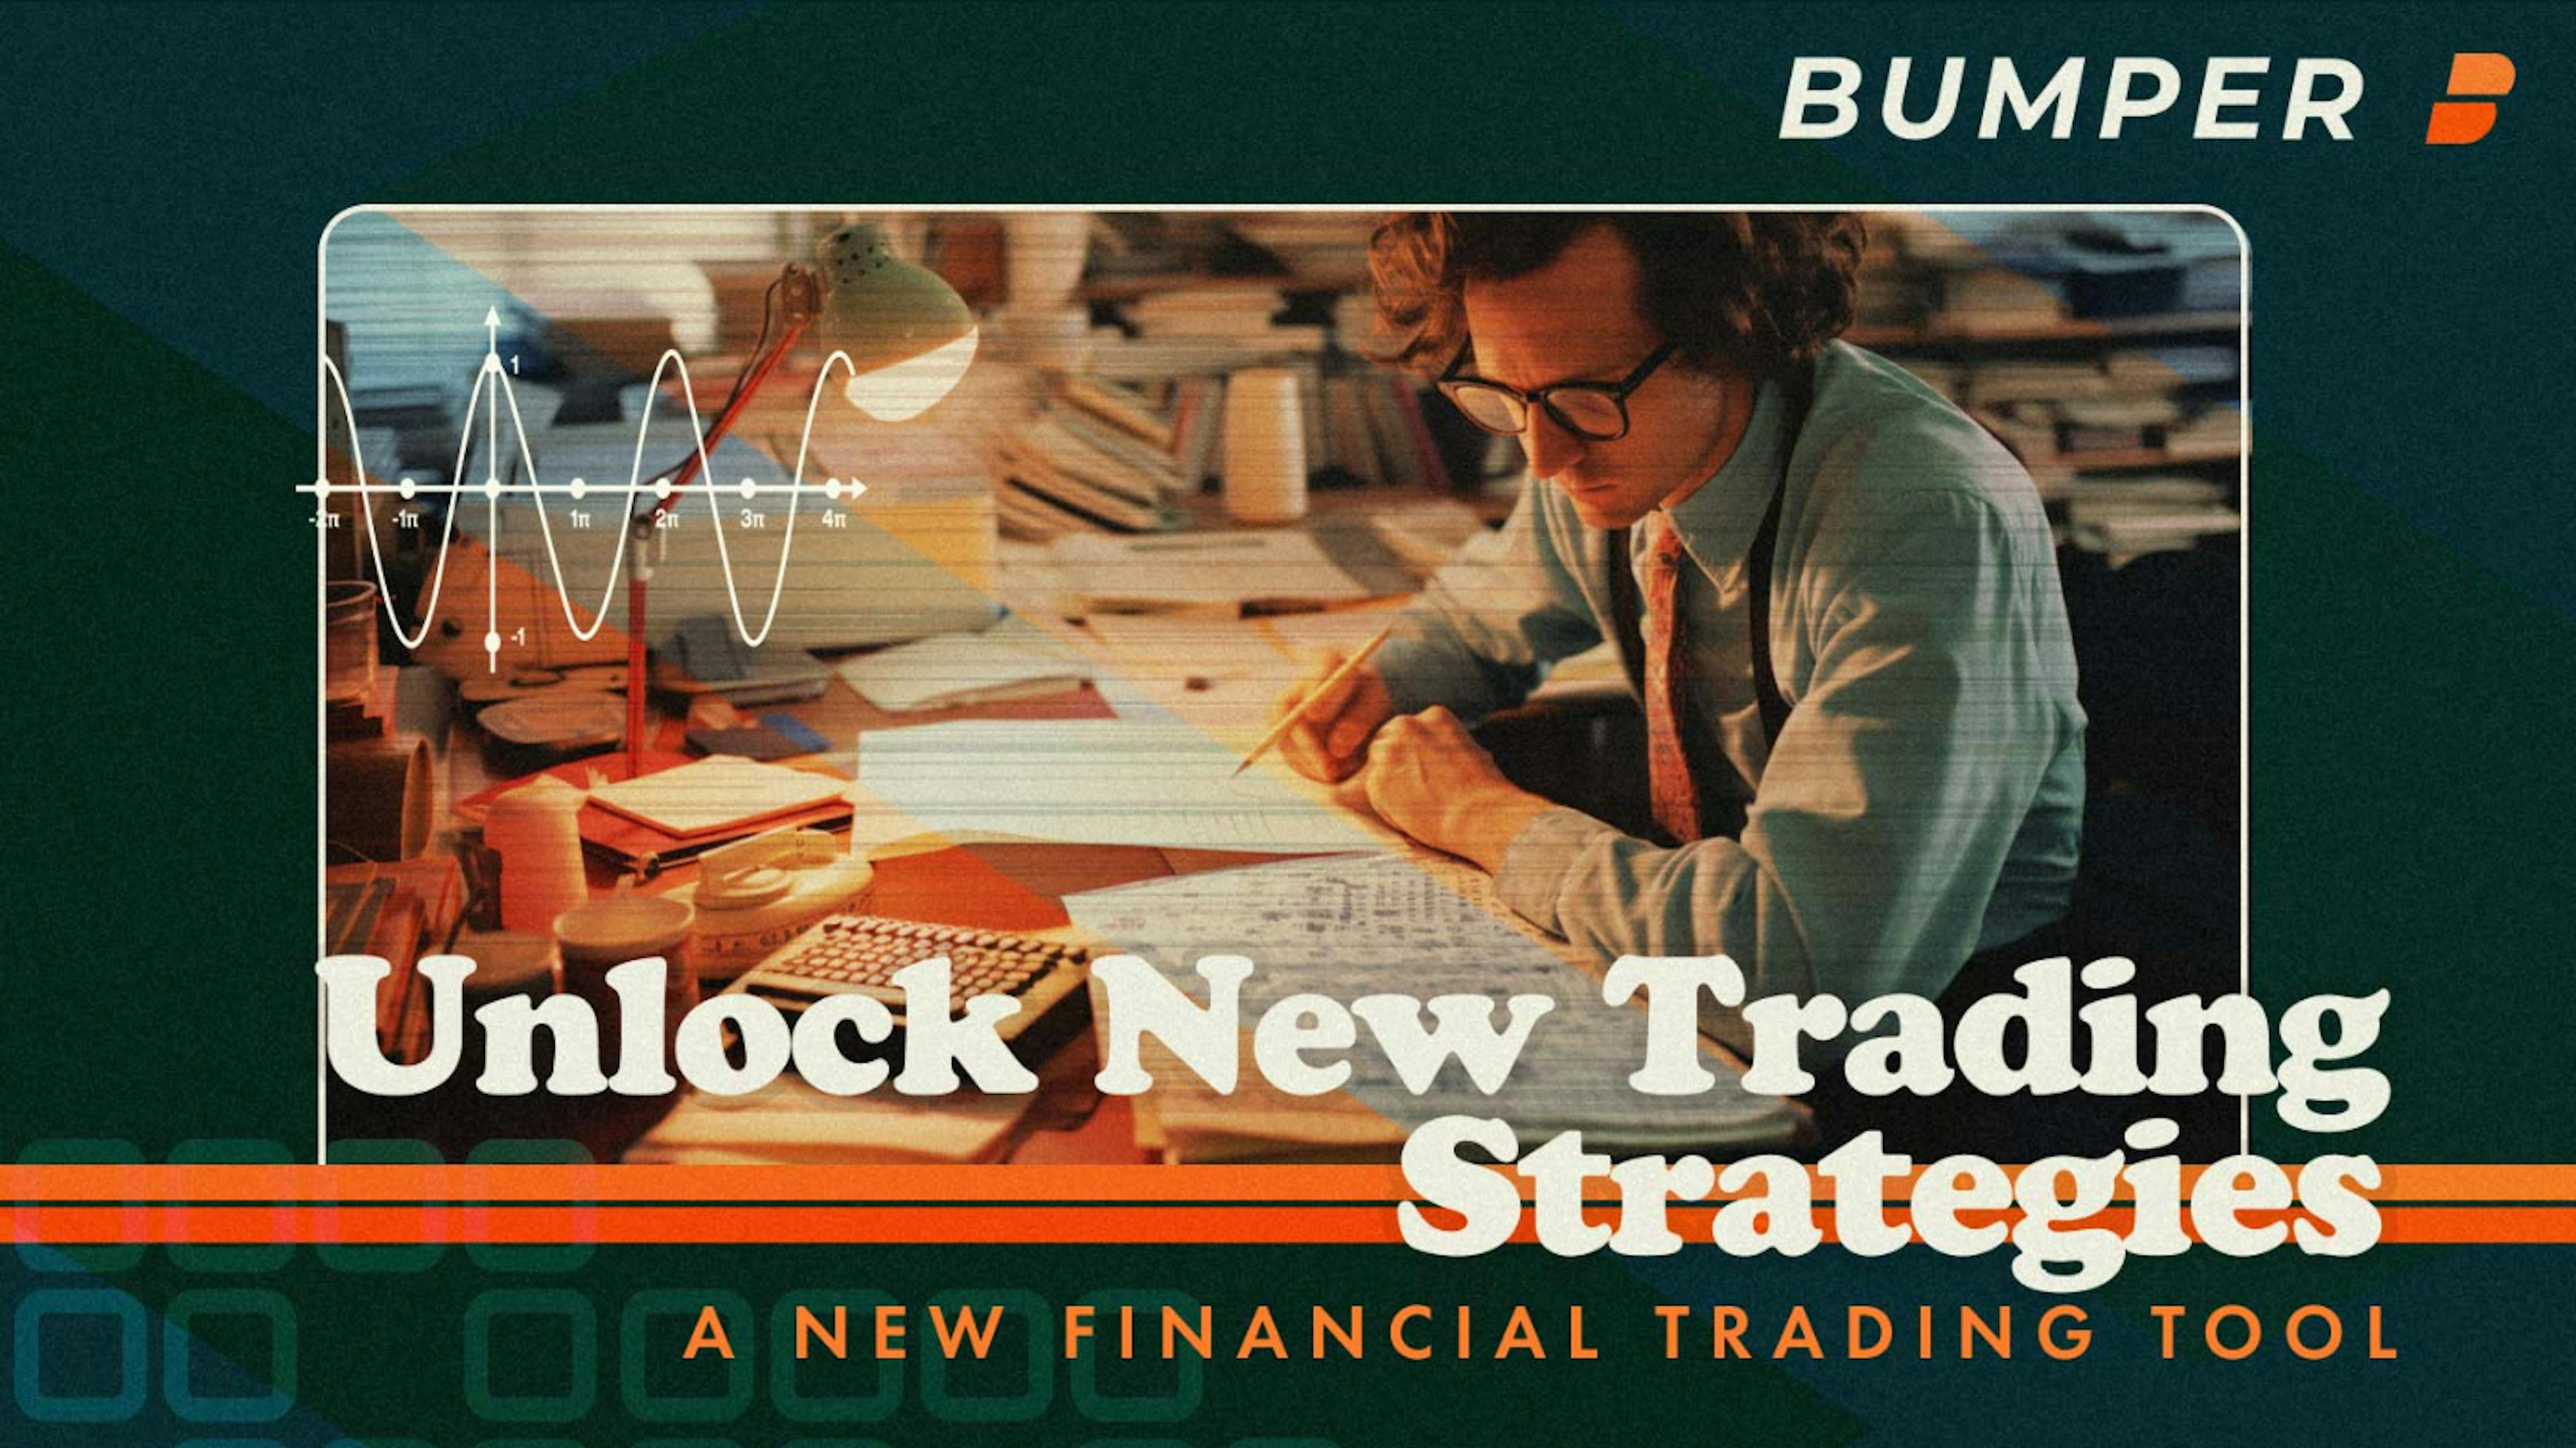 featured image - Kryptomärkte mit Bumper meistern: 6 fortgeschrittene Handelsstrategien